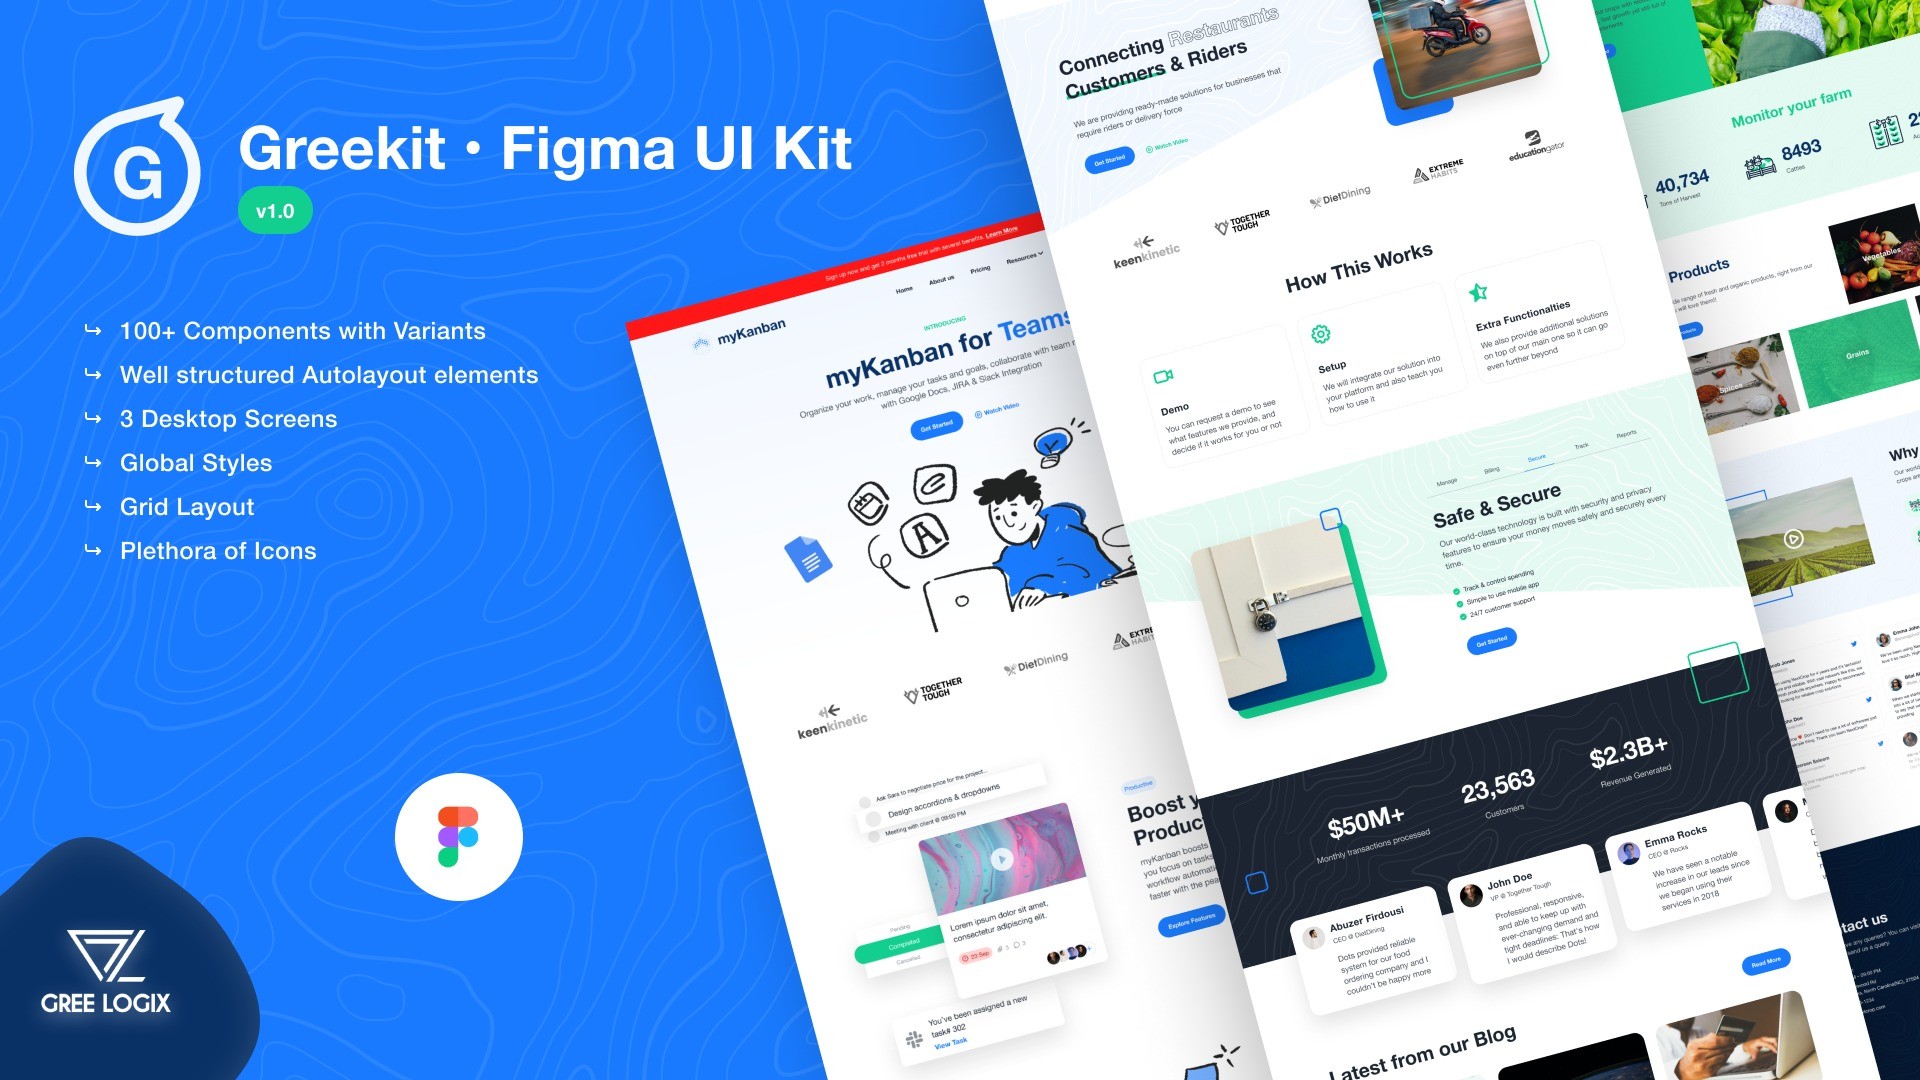 AppSumo Deal for Greekit - Figma UI Kit v1.0